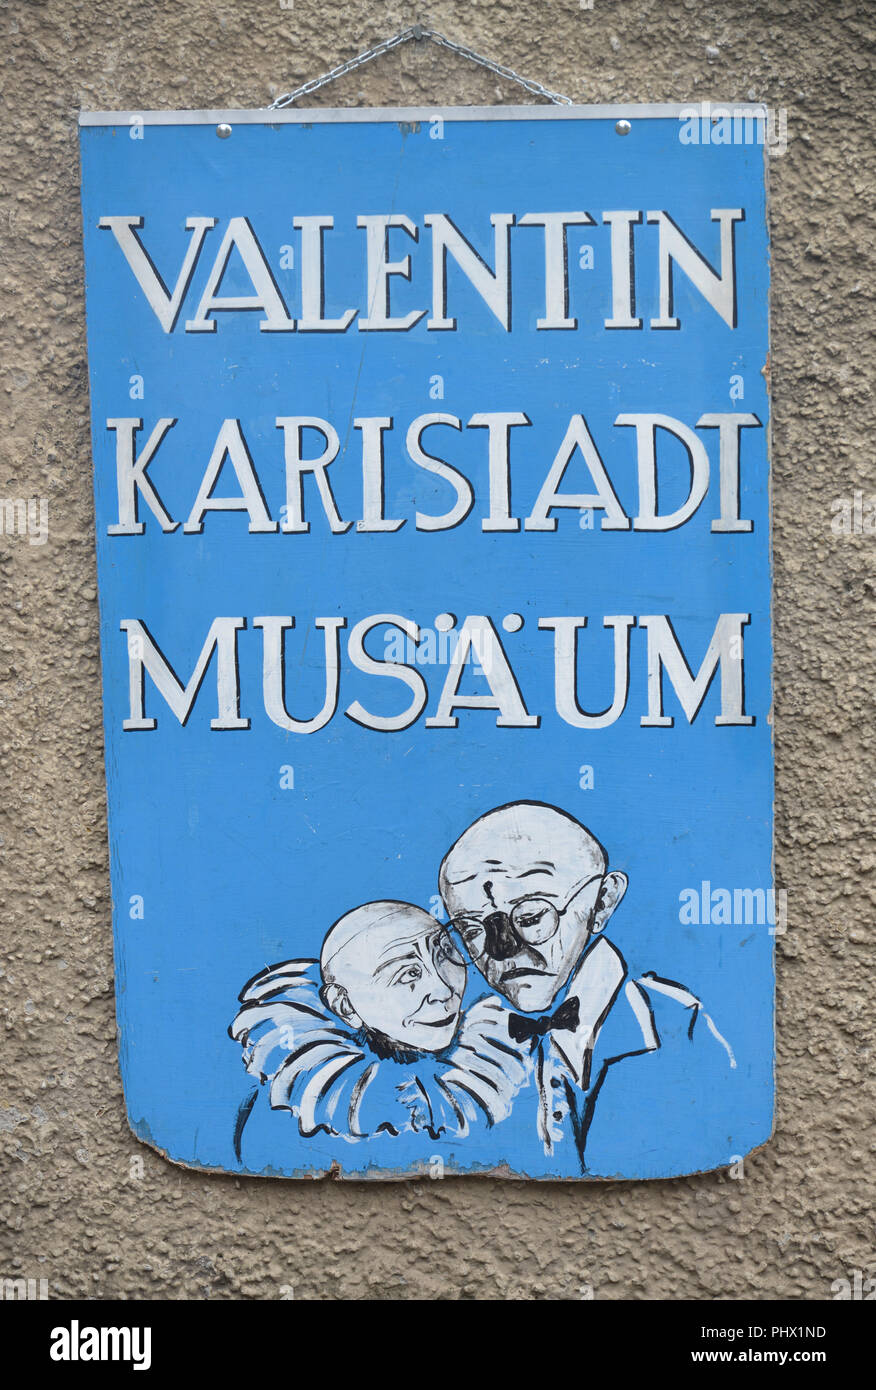 Valentin-Karlstadt-Musaeum, Isartorplatz, Monaco di Baviera, Deutschland Foto Stock